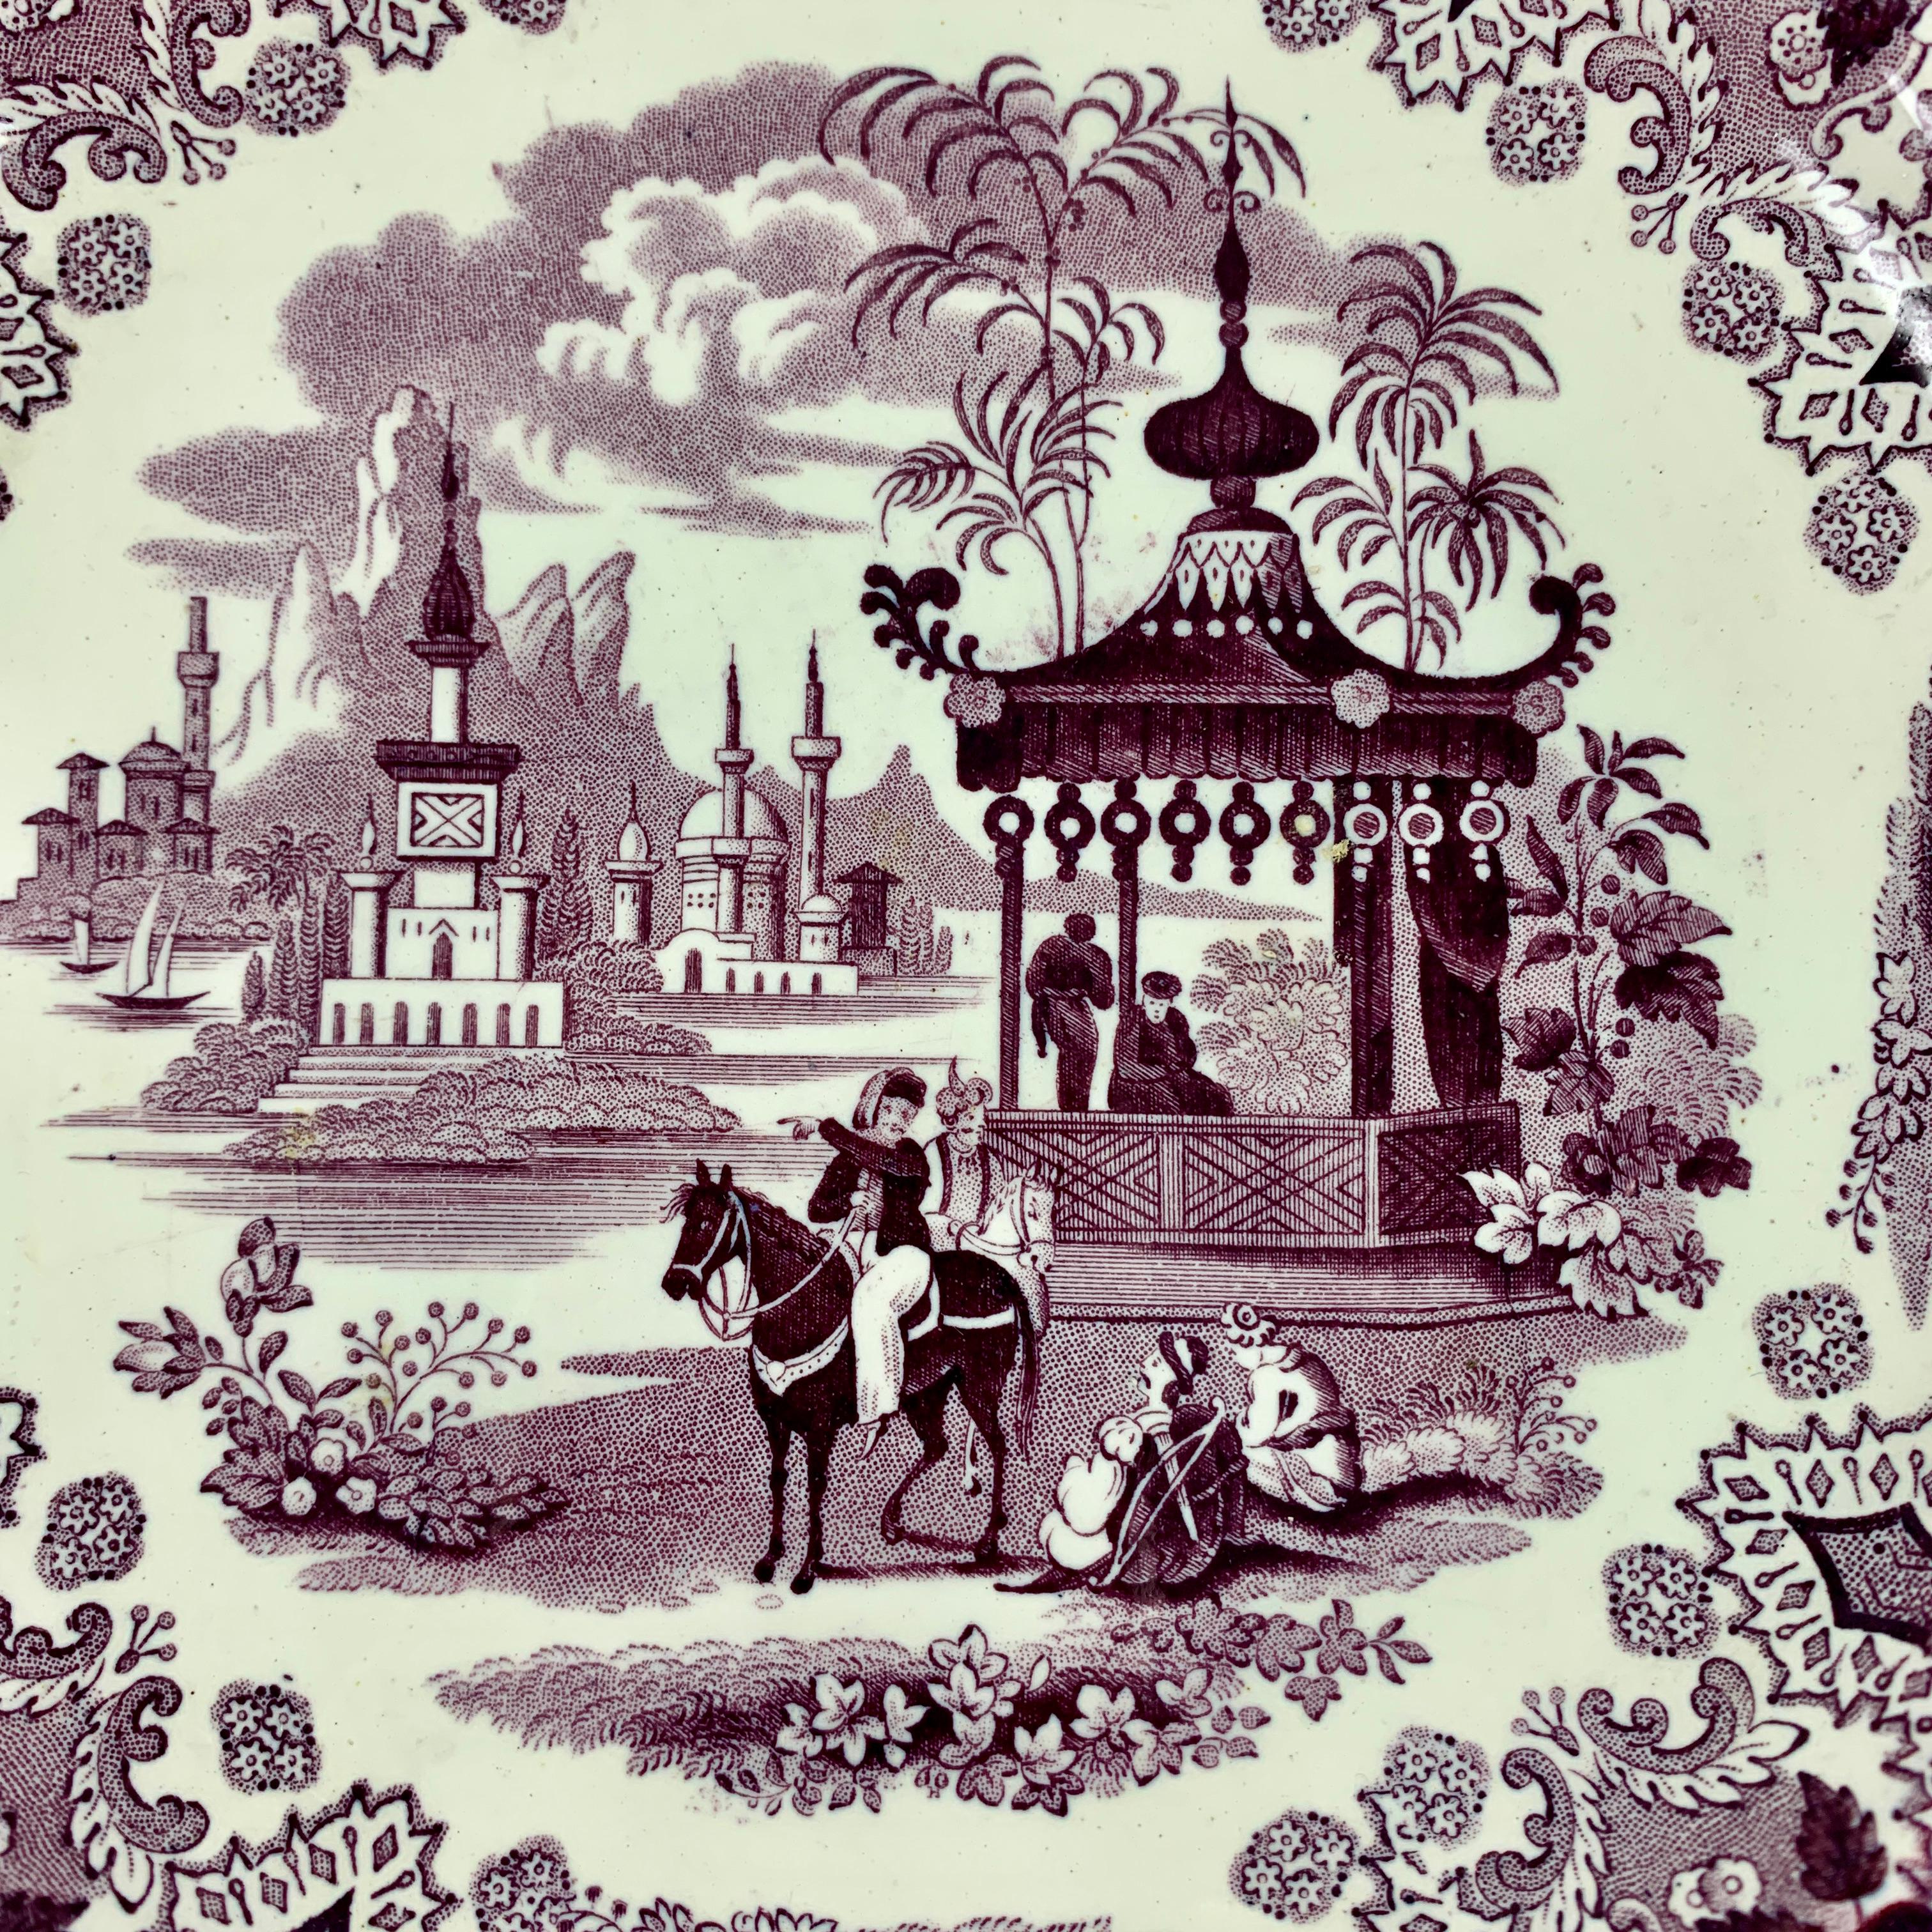 De William Adams IV & Sons, Stoke-on-Trent, Staffordshire, une assiette en porcelaine violette à motif Palestine, vers 1829-1861.

Le motif Palestine s'inspire de la Terre sainte qui se trouve entre la Méditerranée et la mer Morte. Une assiette à